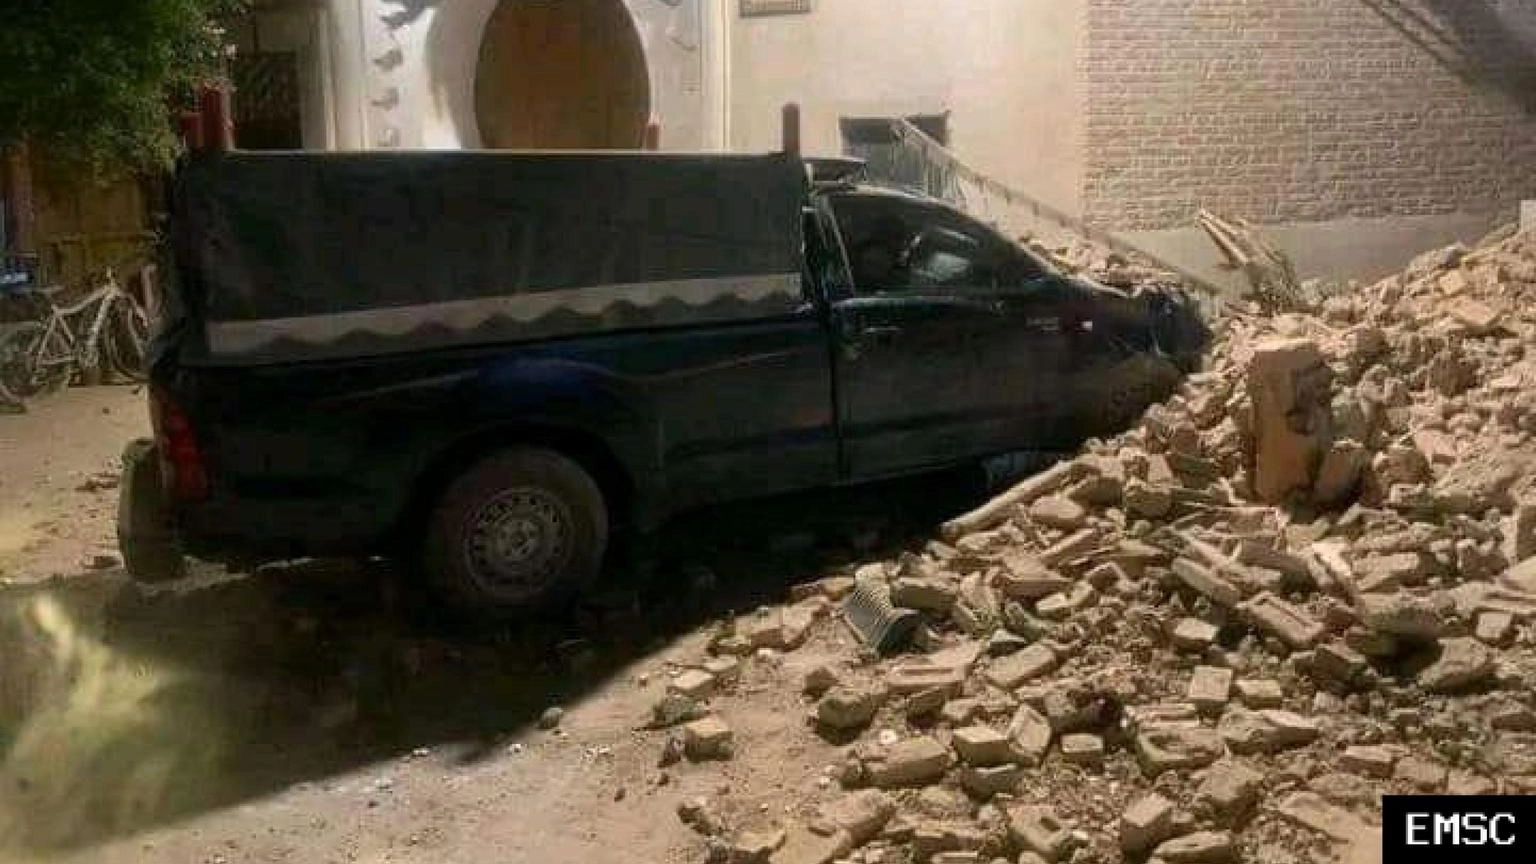 Salgono a oltre 2000 i morti per il sisma in Marocco